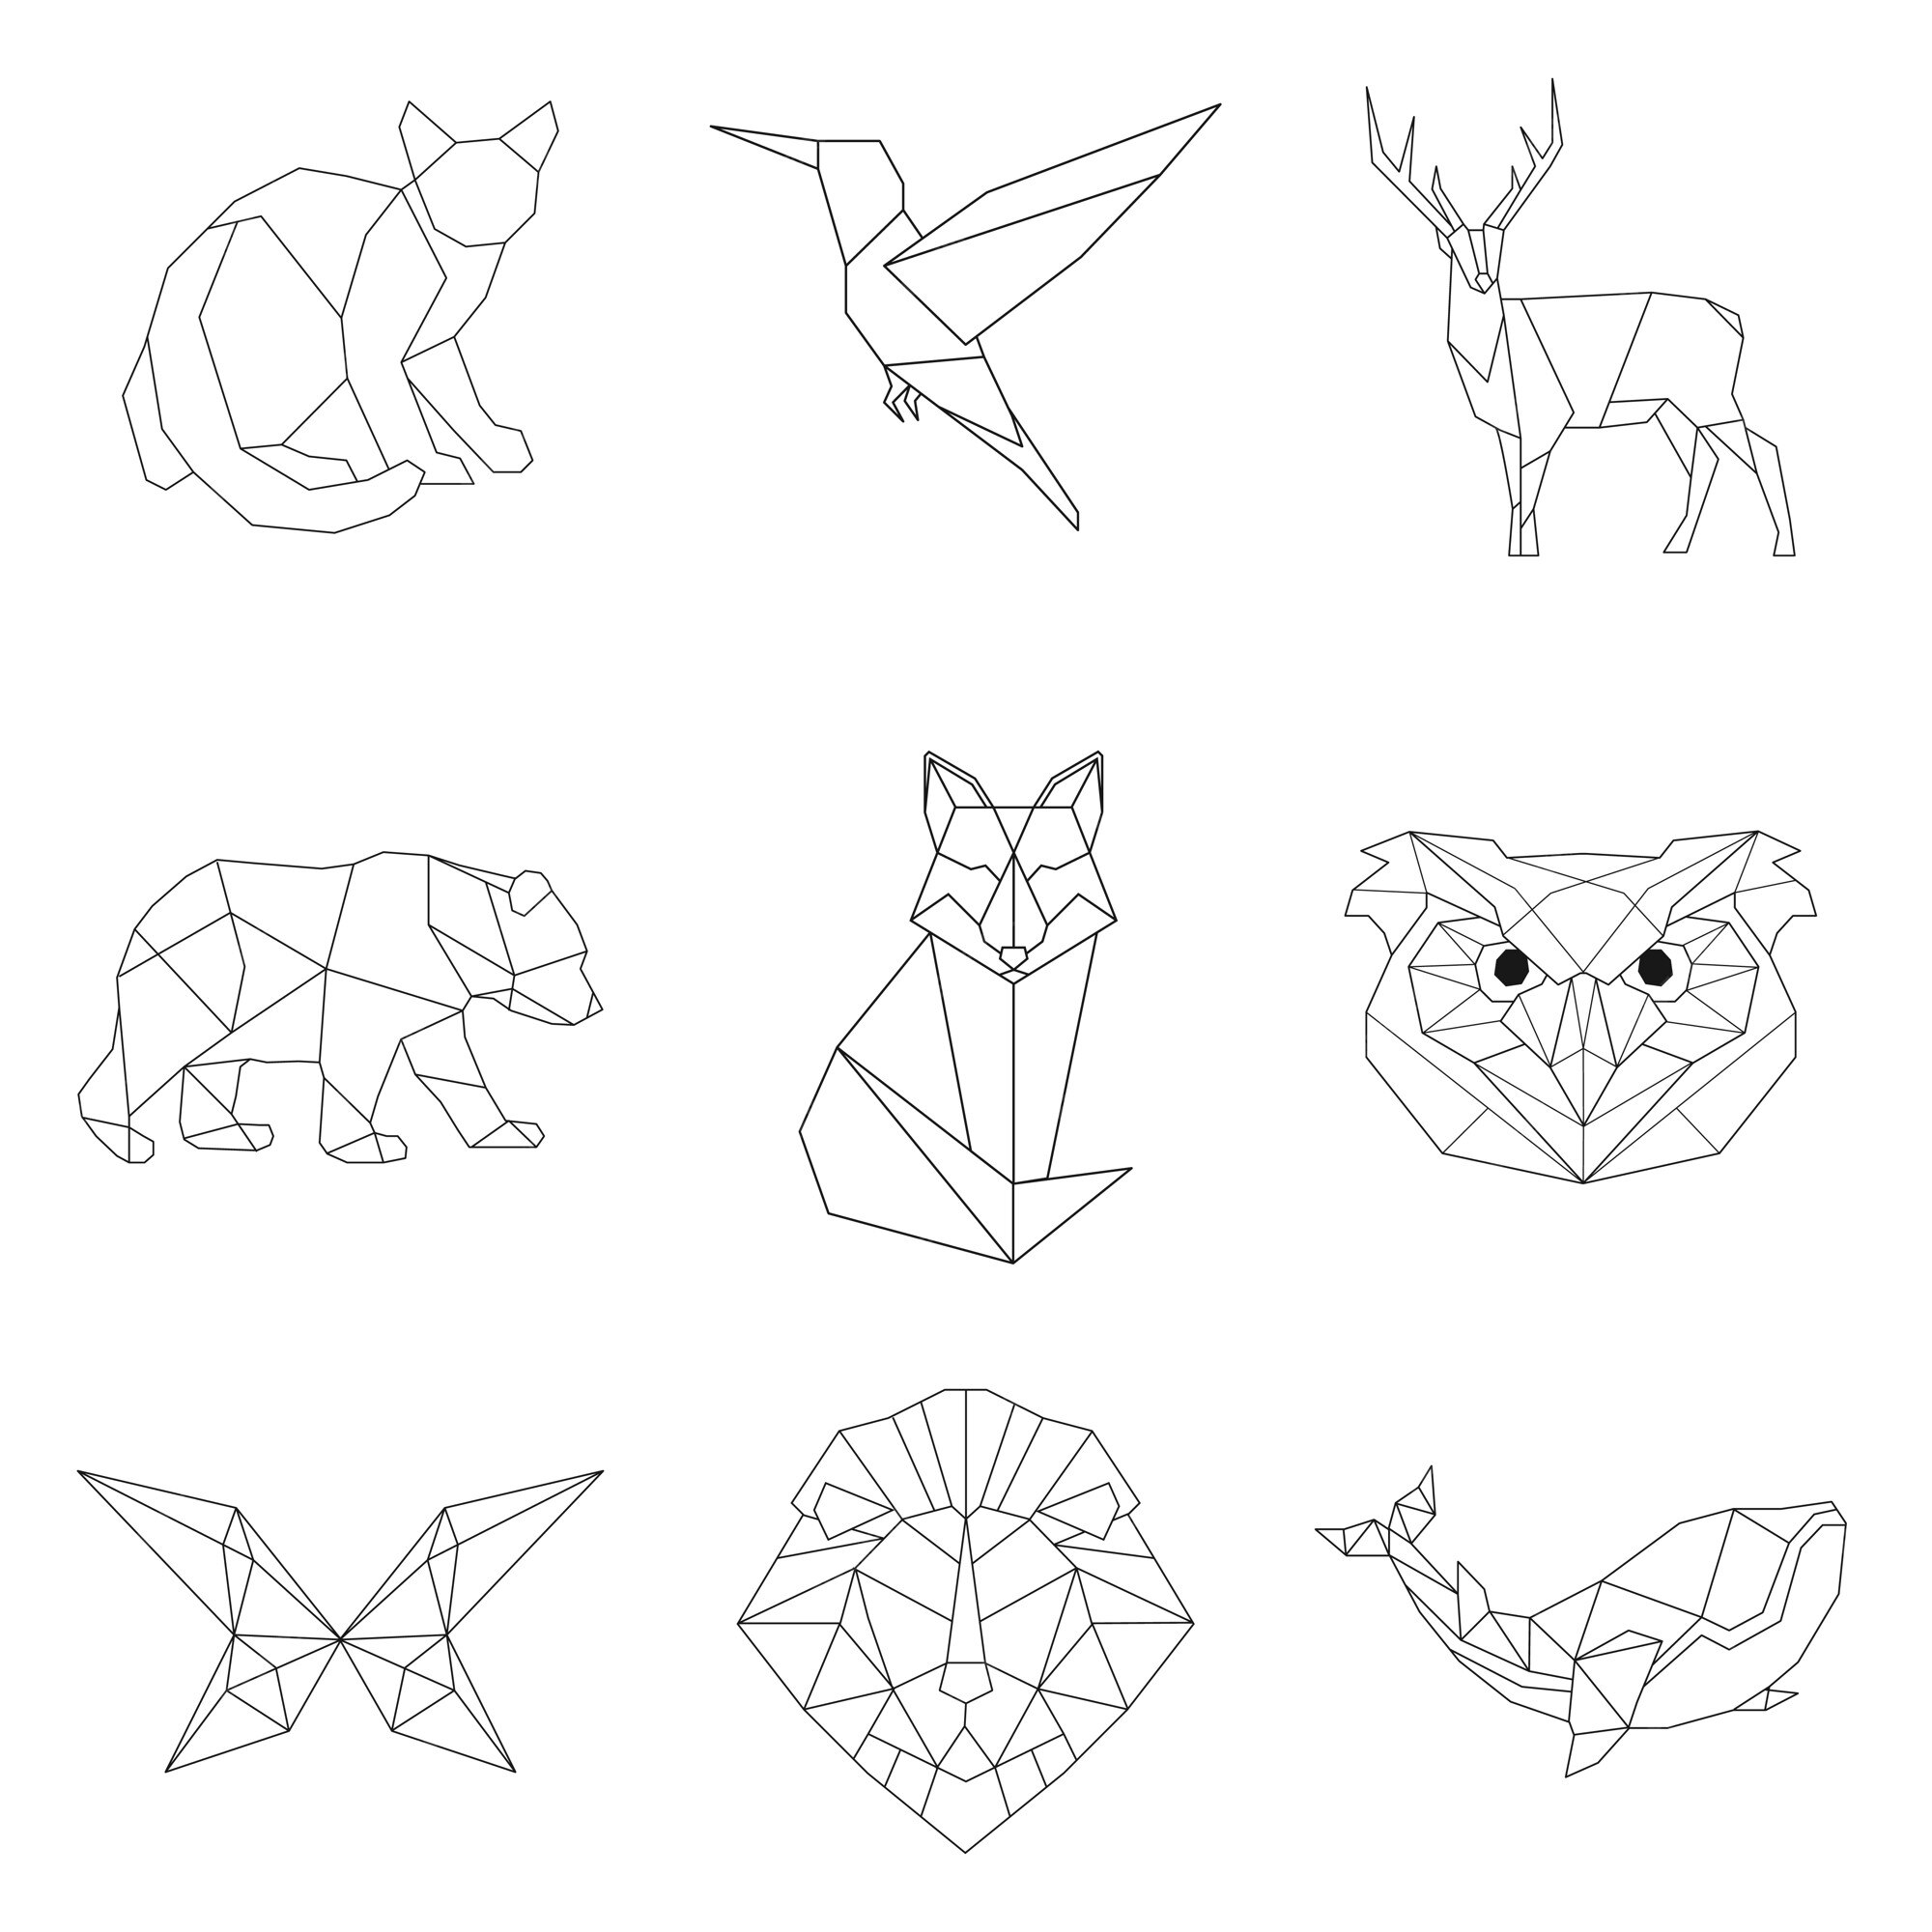 Vectores e ilustraciones de Lobo geometrico para descargar gratis | Freepik